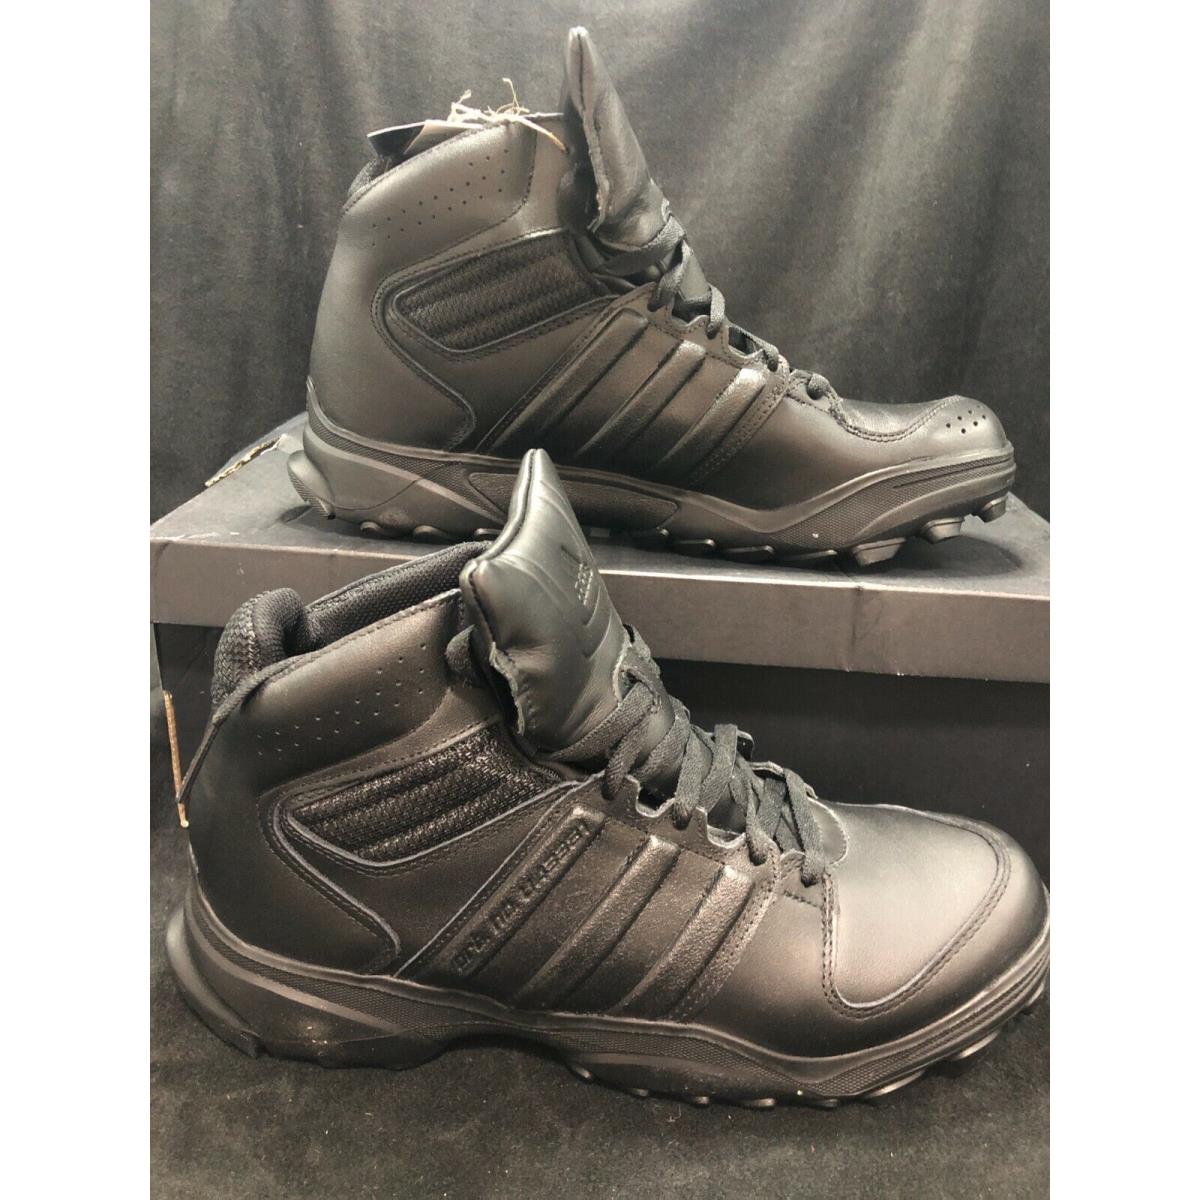 Men`s Adidas GSG-9.4 U43381 Black Boots Shoes Tactical All Black Size 11.5 a4